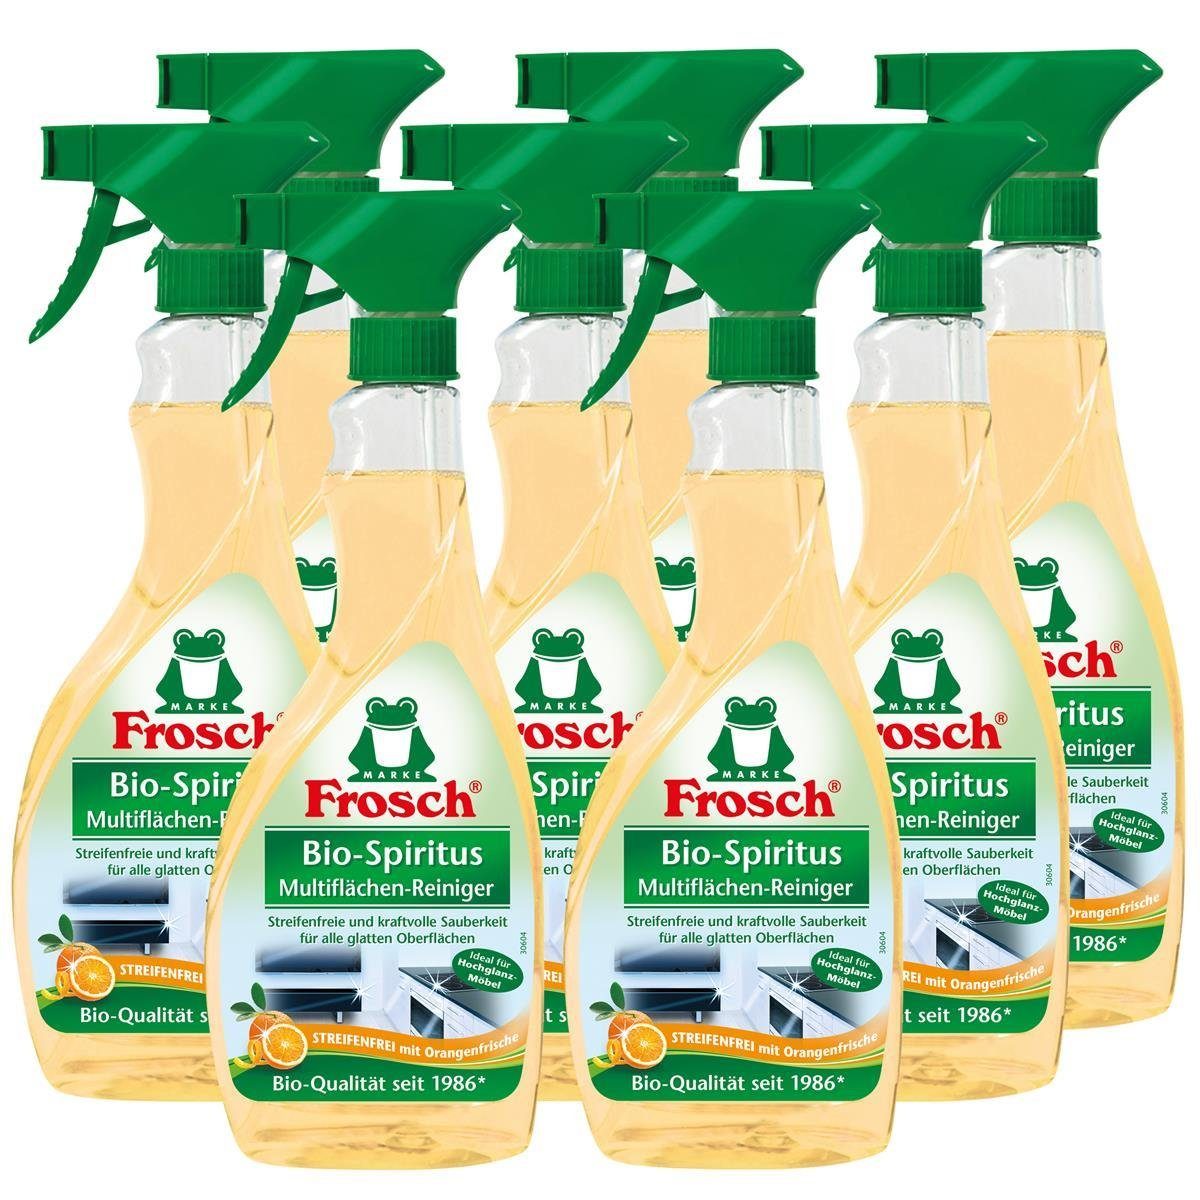 FROSCH 8x Frosch Orangen Multiflächen-Reiniger Sprühflasche 500 ml Glasreiniger